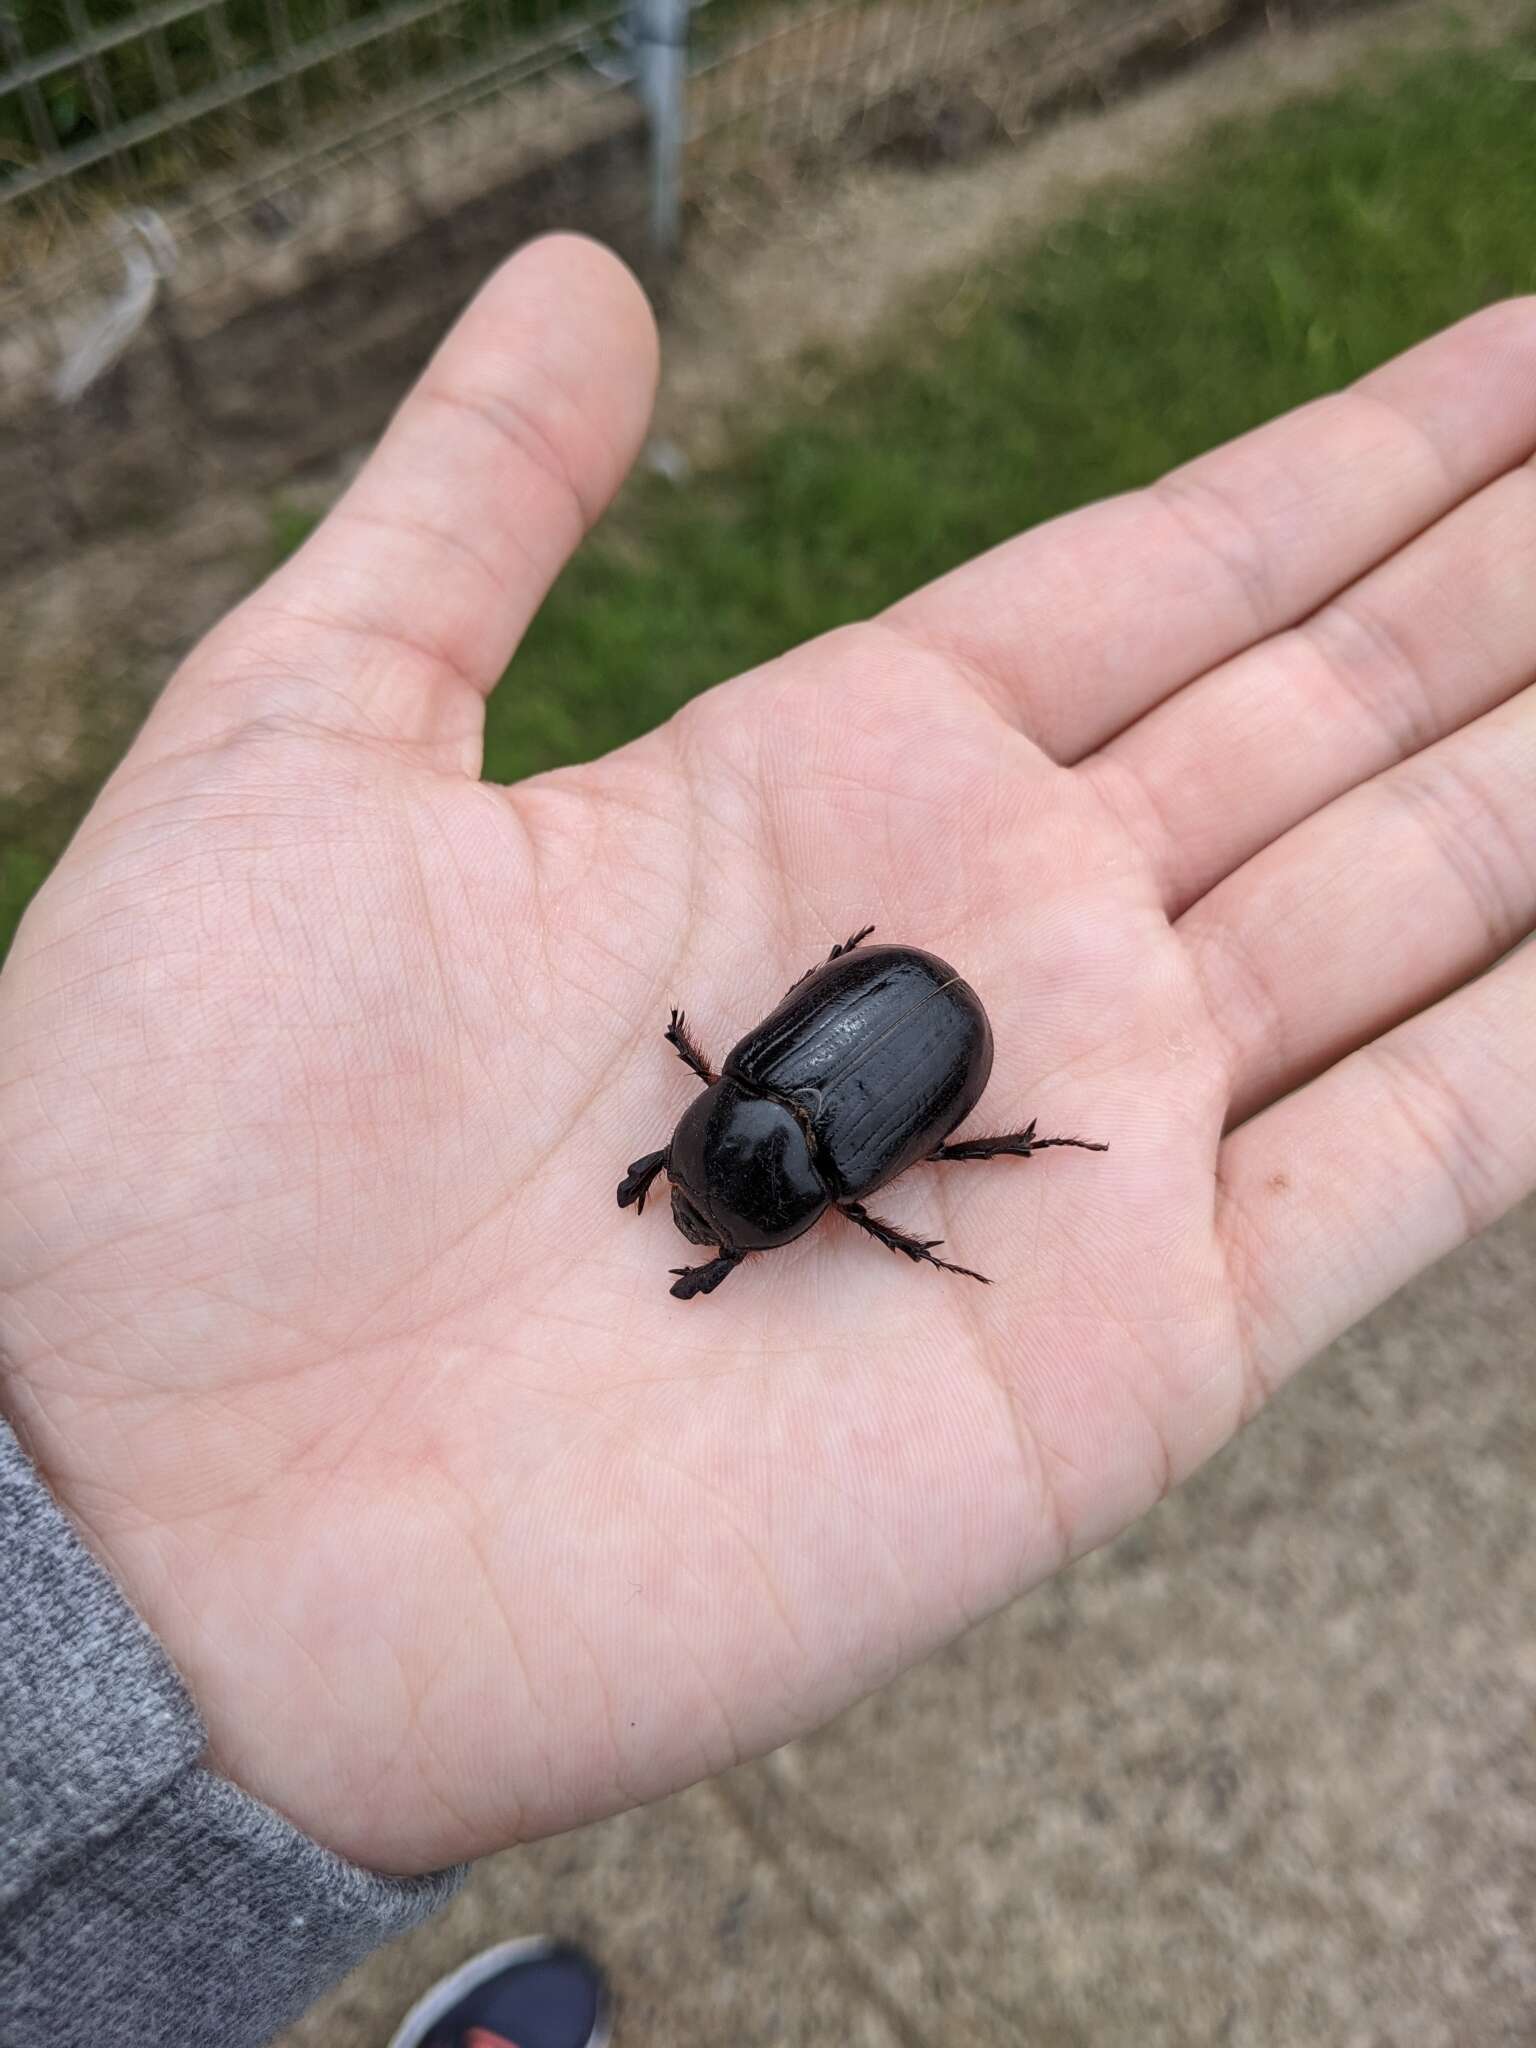 Image of black lawn beetle